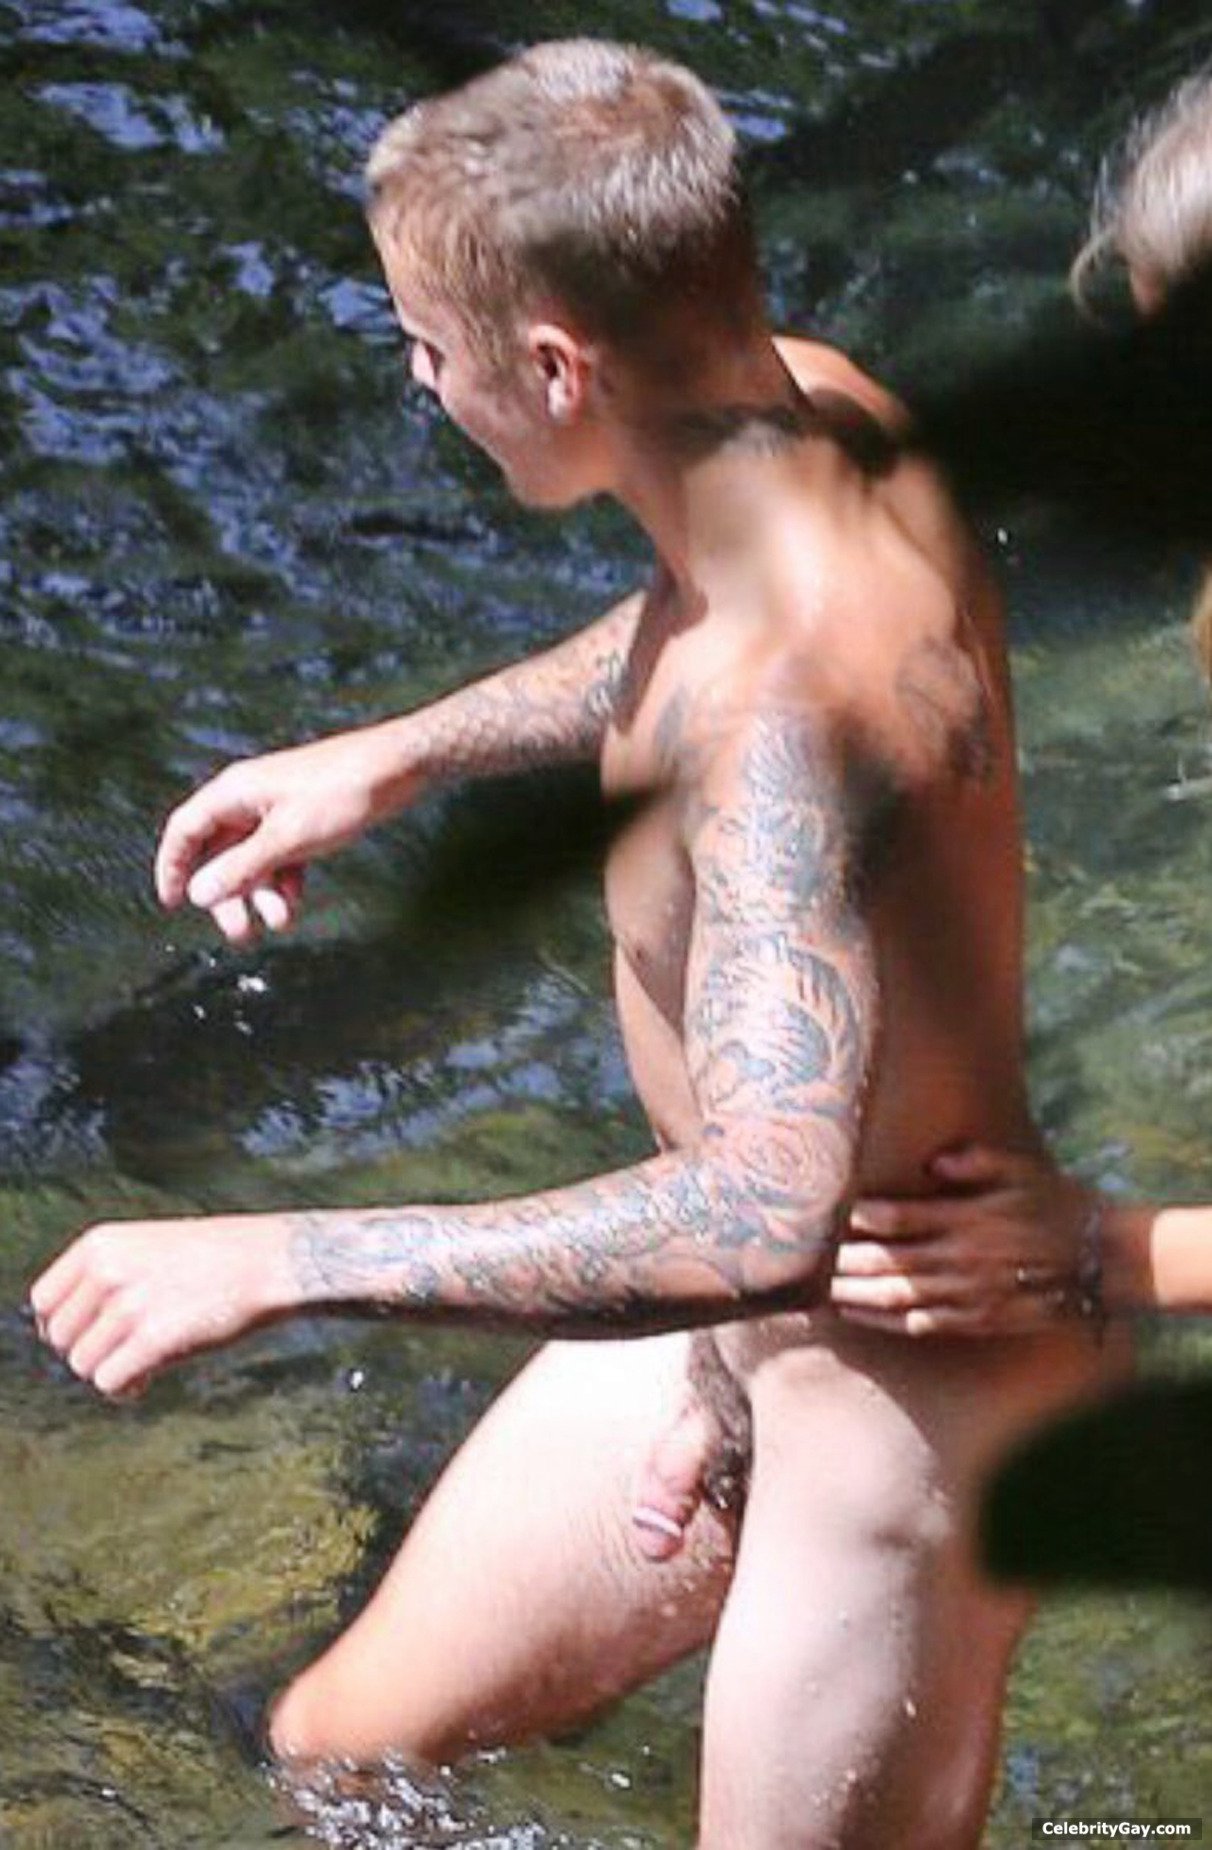 Justin leaked nudes